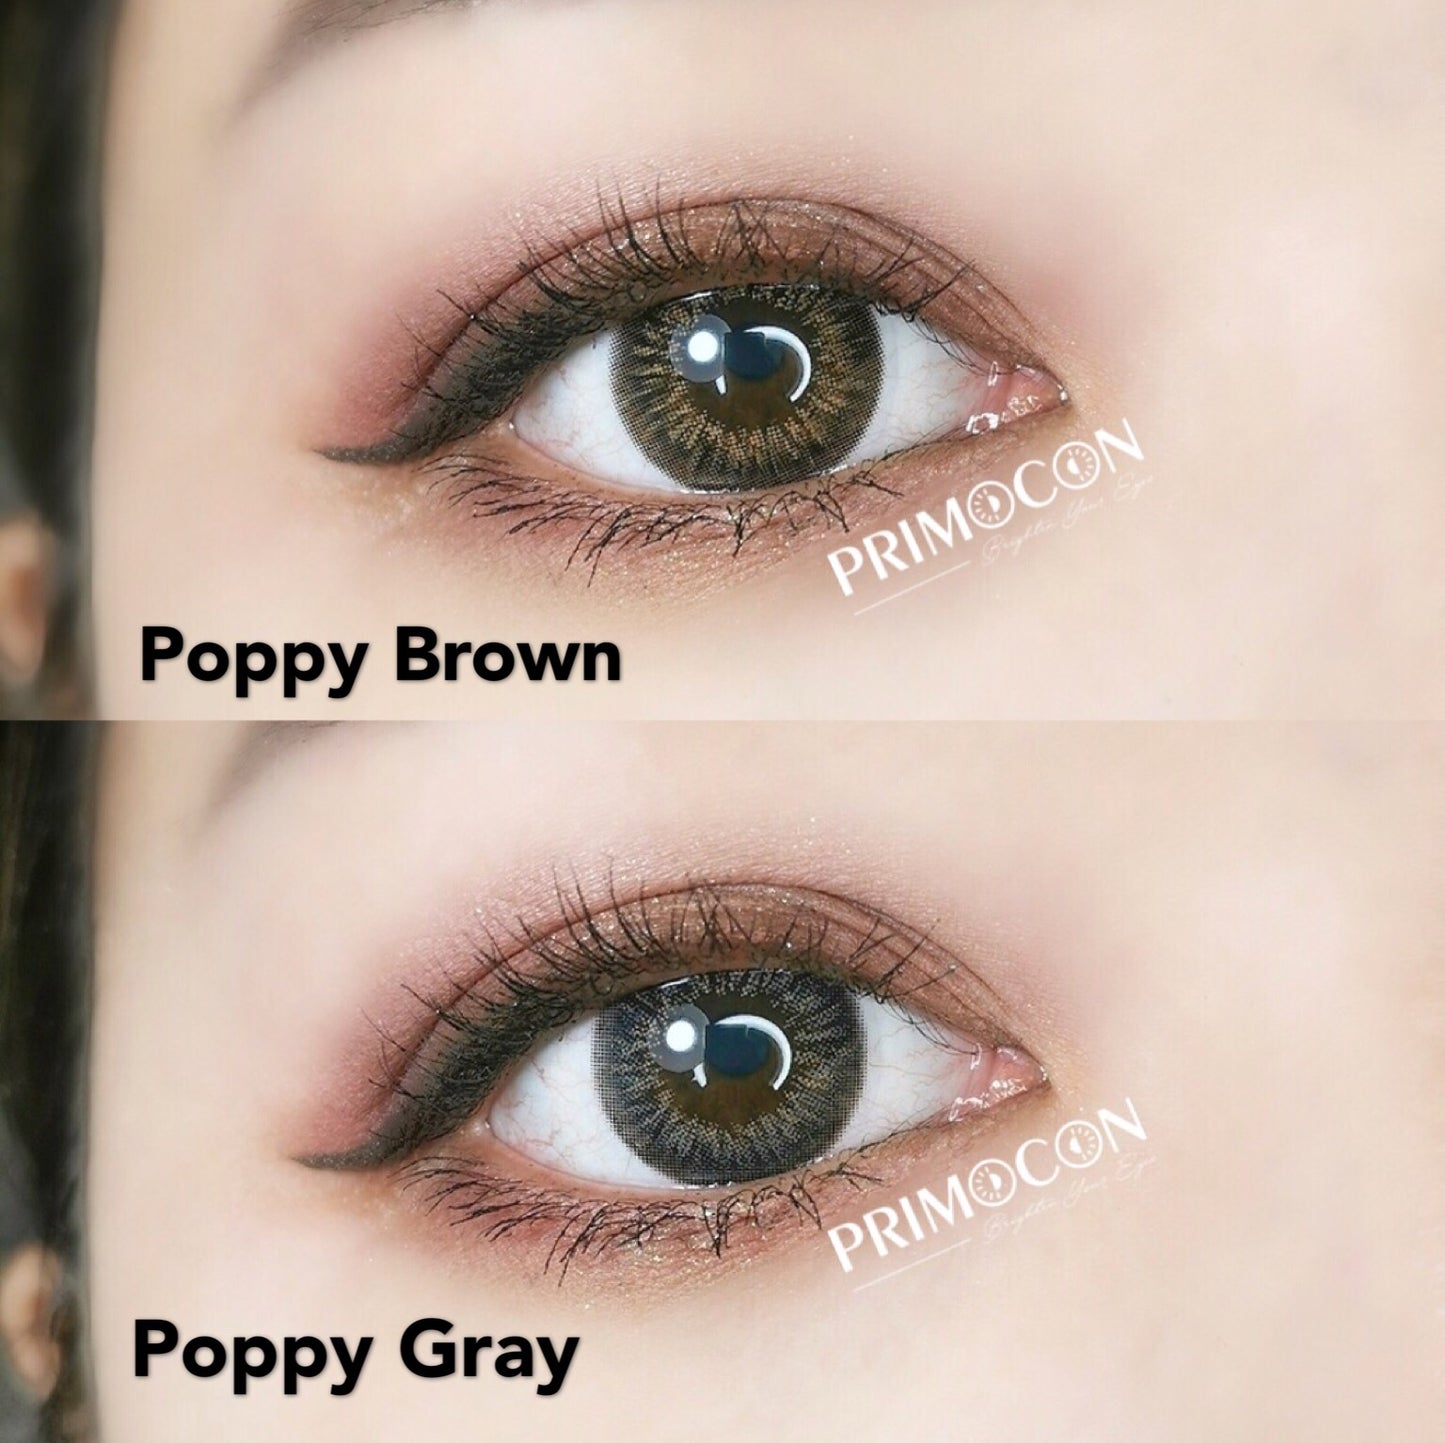 Poppy Brown - Primocon